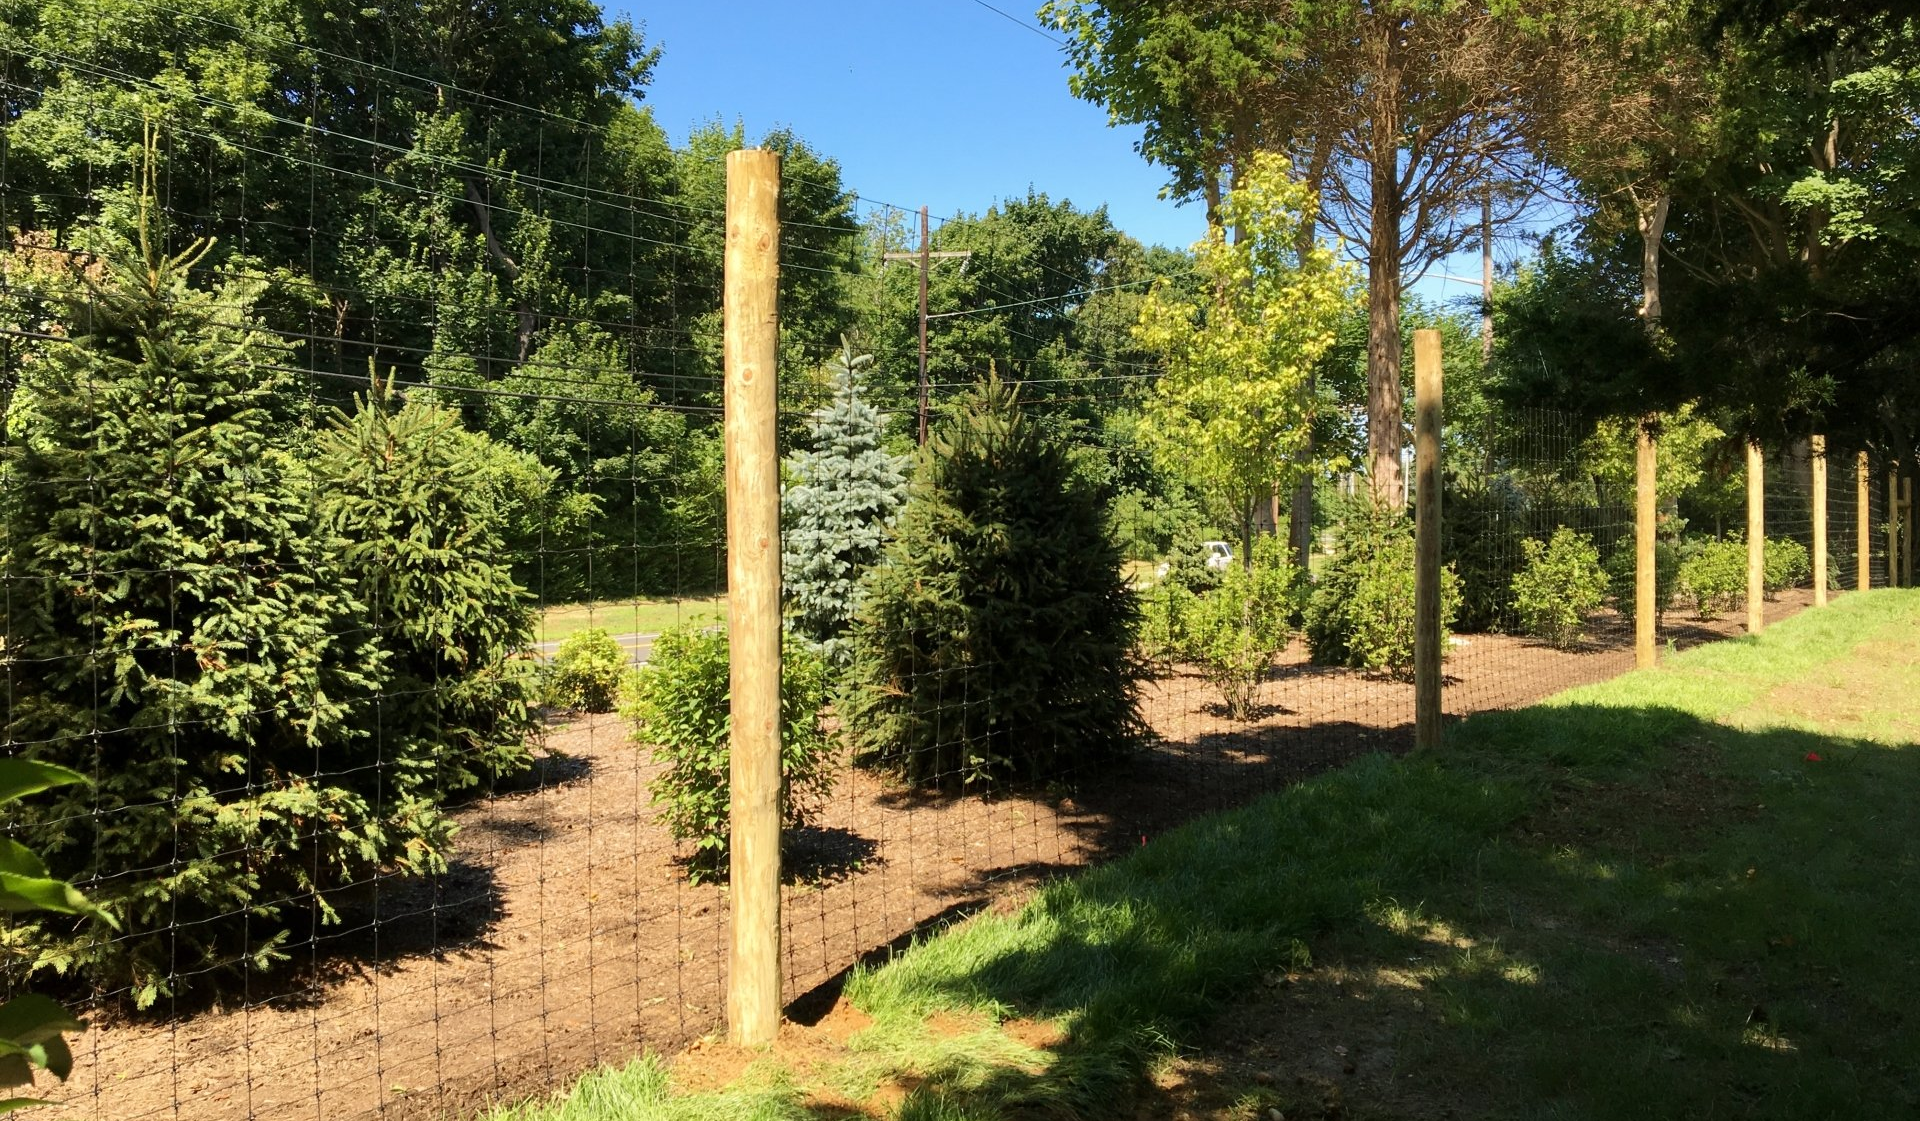 Deer fence for residential